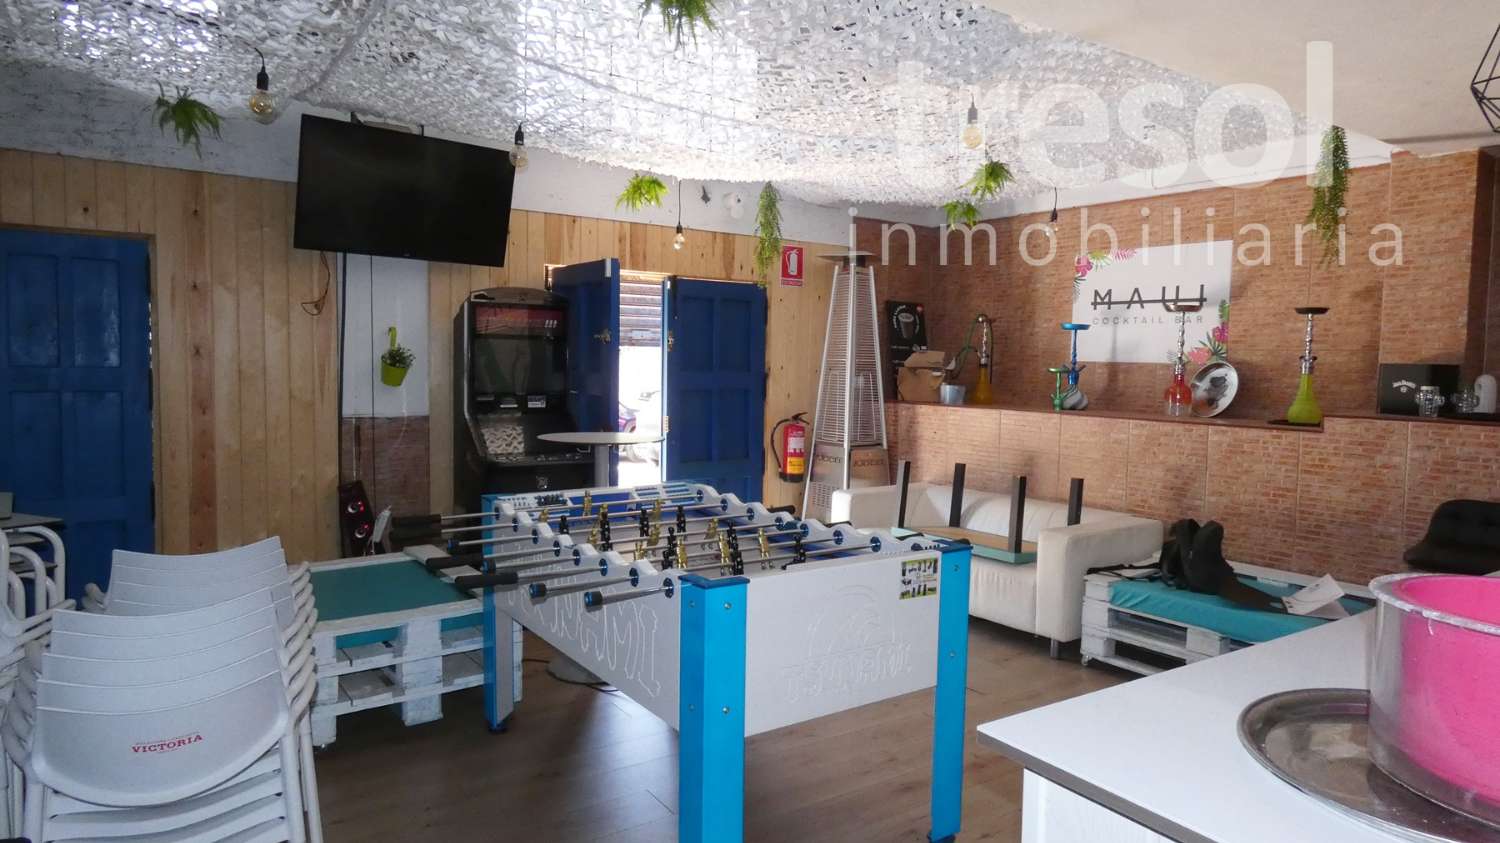 LOCAL CAFETERÍA EN ALQUILER EN CENTRO ALHAURIN DE LA TORRE.